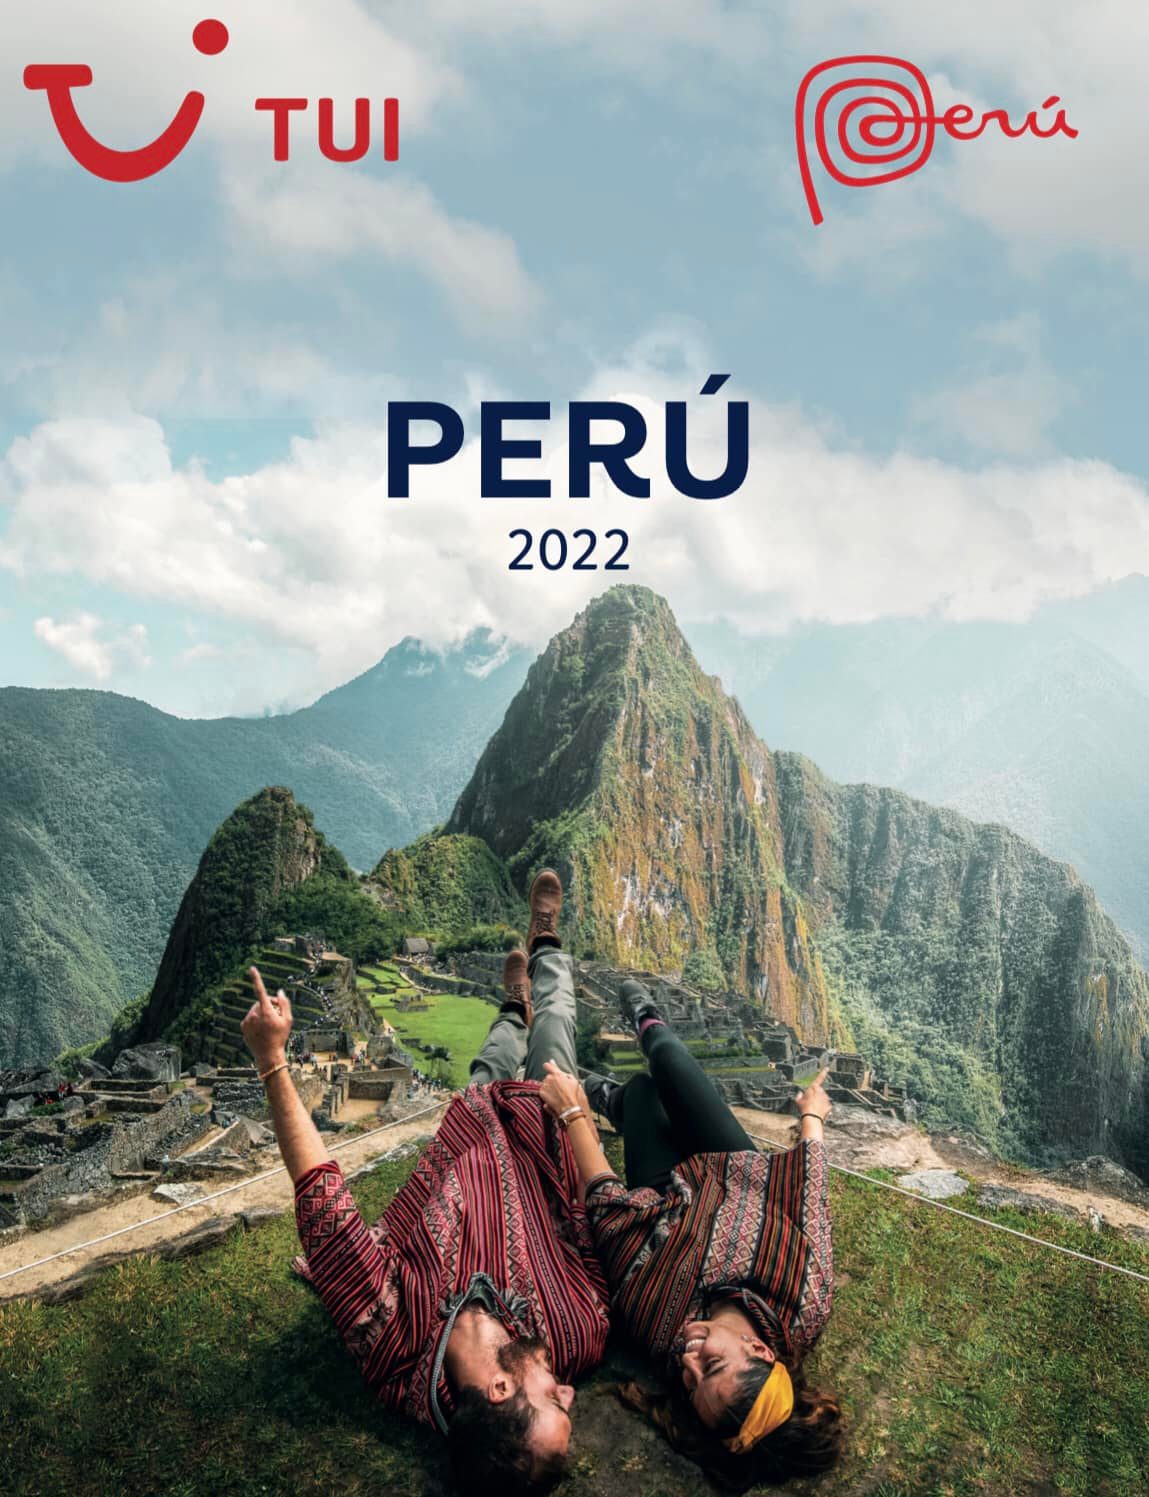 Perú y TUI unidos para promocionar el destino en España durante 2022